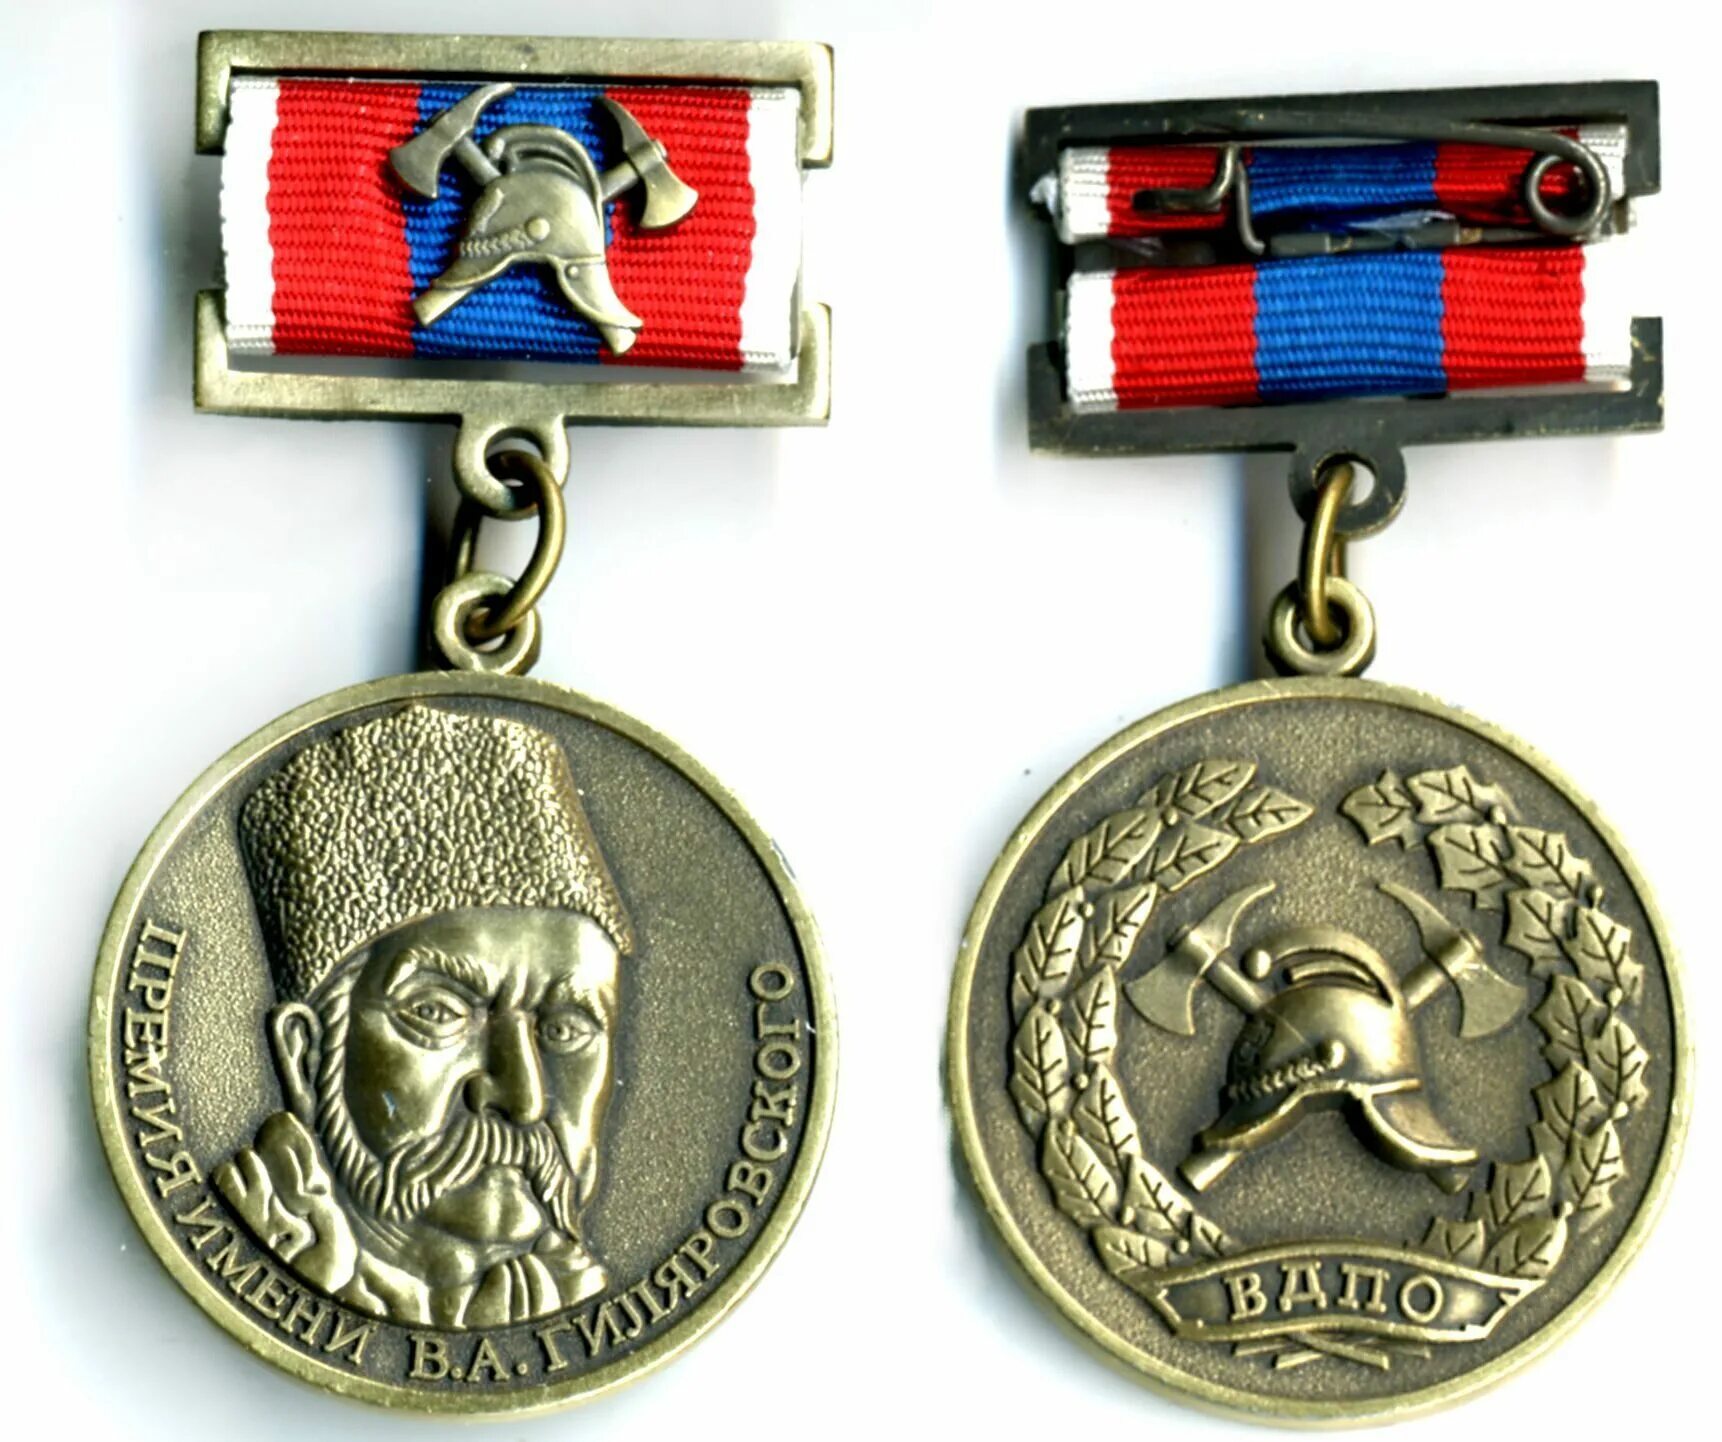 Https вдпо. Медали ВДПО. Медаль за содействие в борьбе с пожарами. Орден ВДПО. Награда добровольного пожарного.